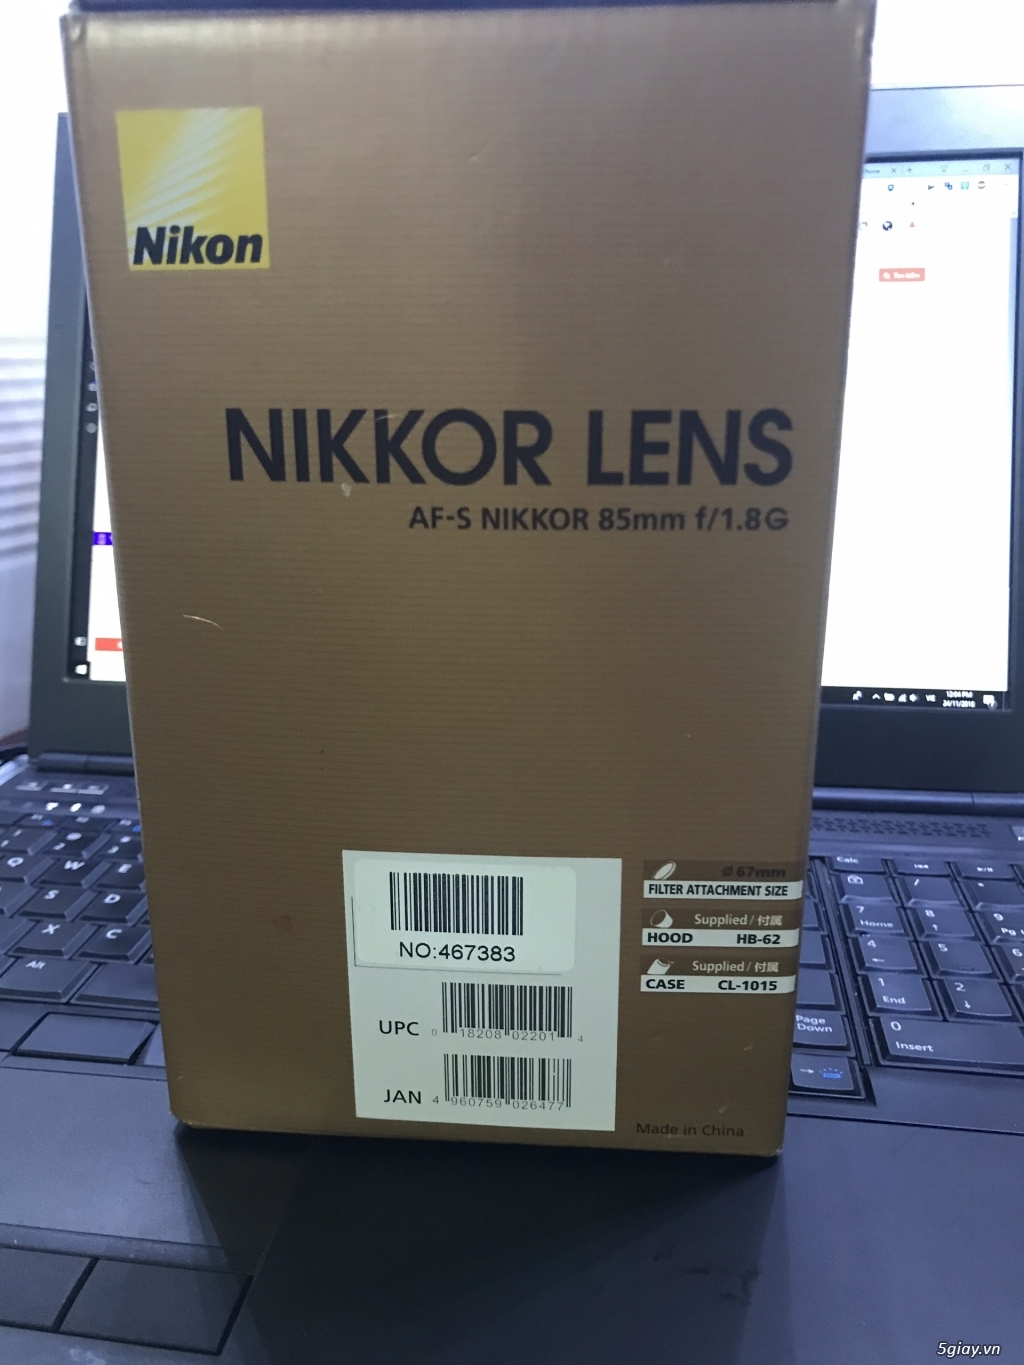 Cần bán Ống kính Nikon 85mm 1.8G AF - còn BH đến 04/2019 tại VJCAMERA - 4